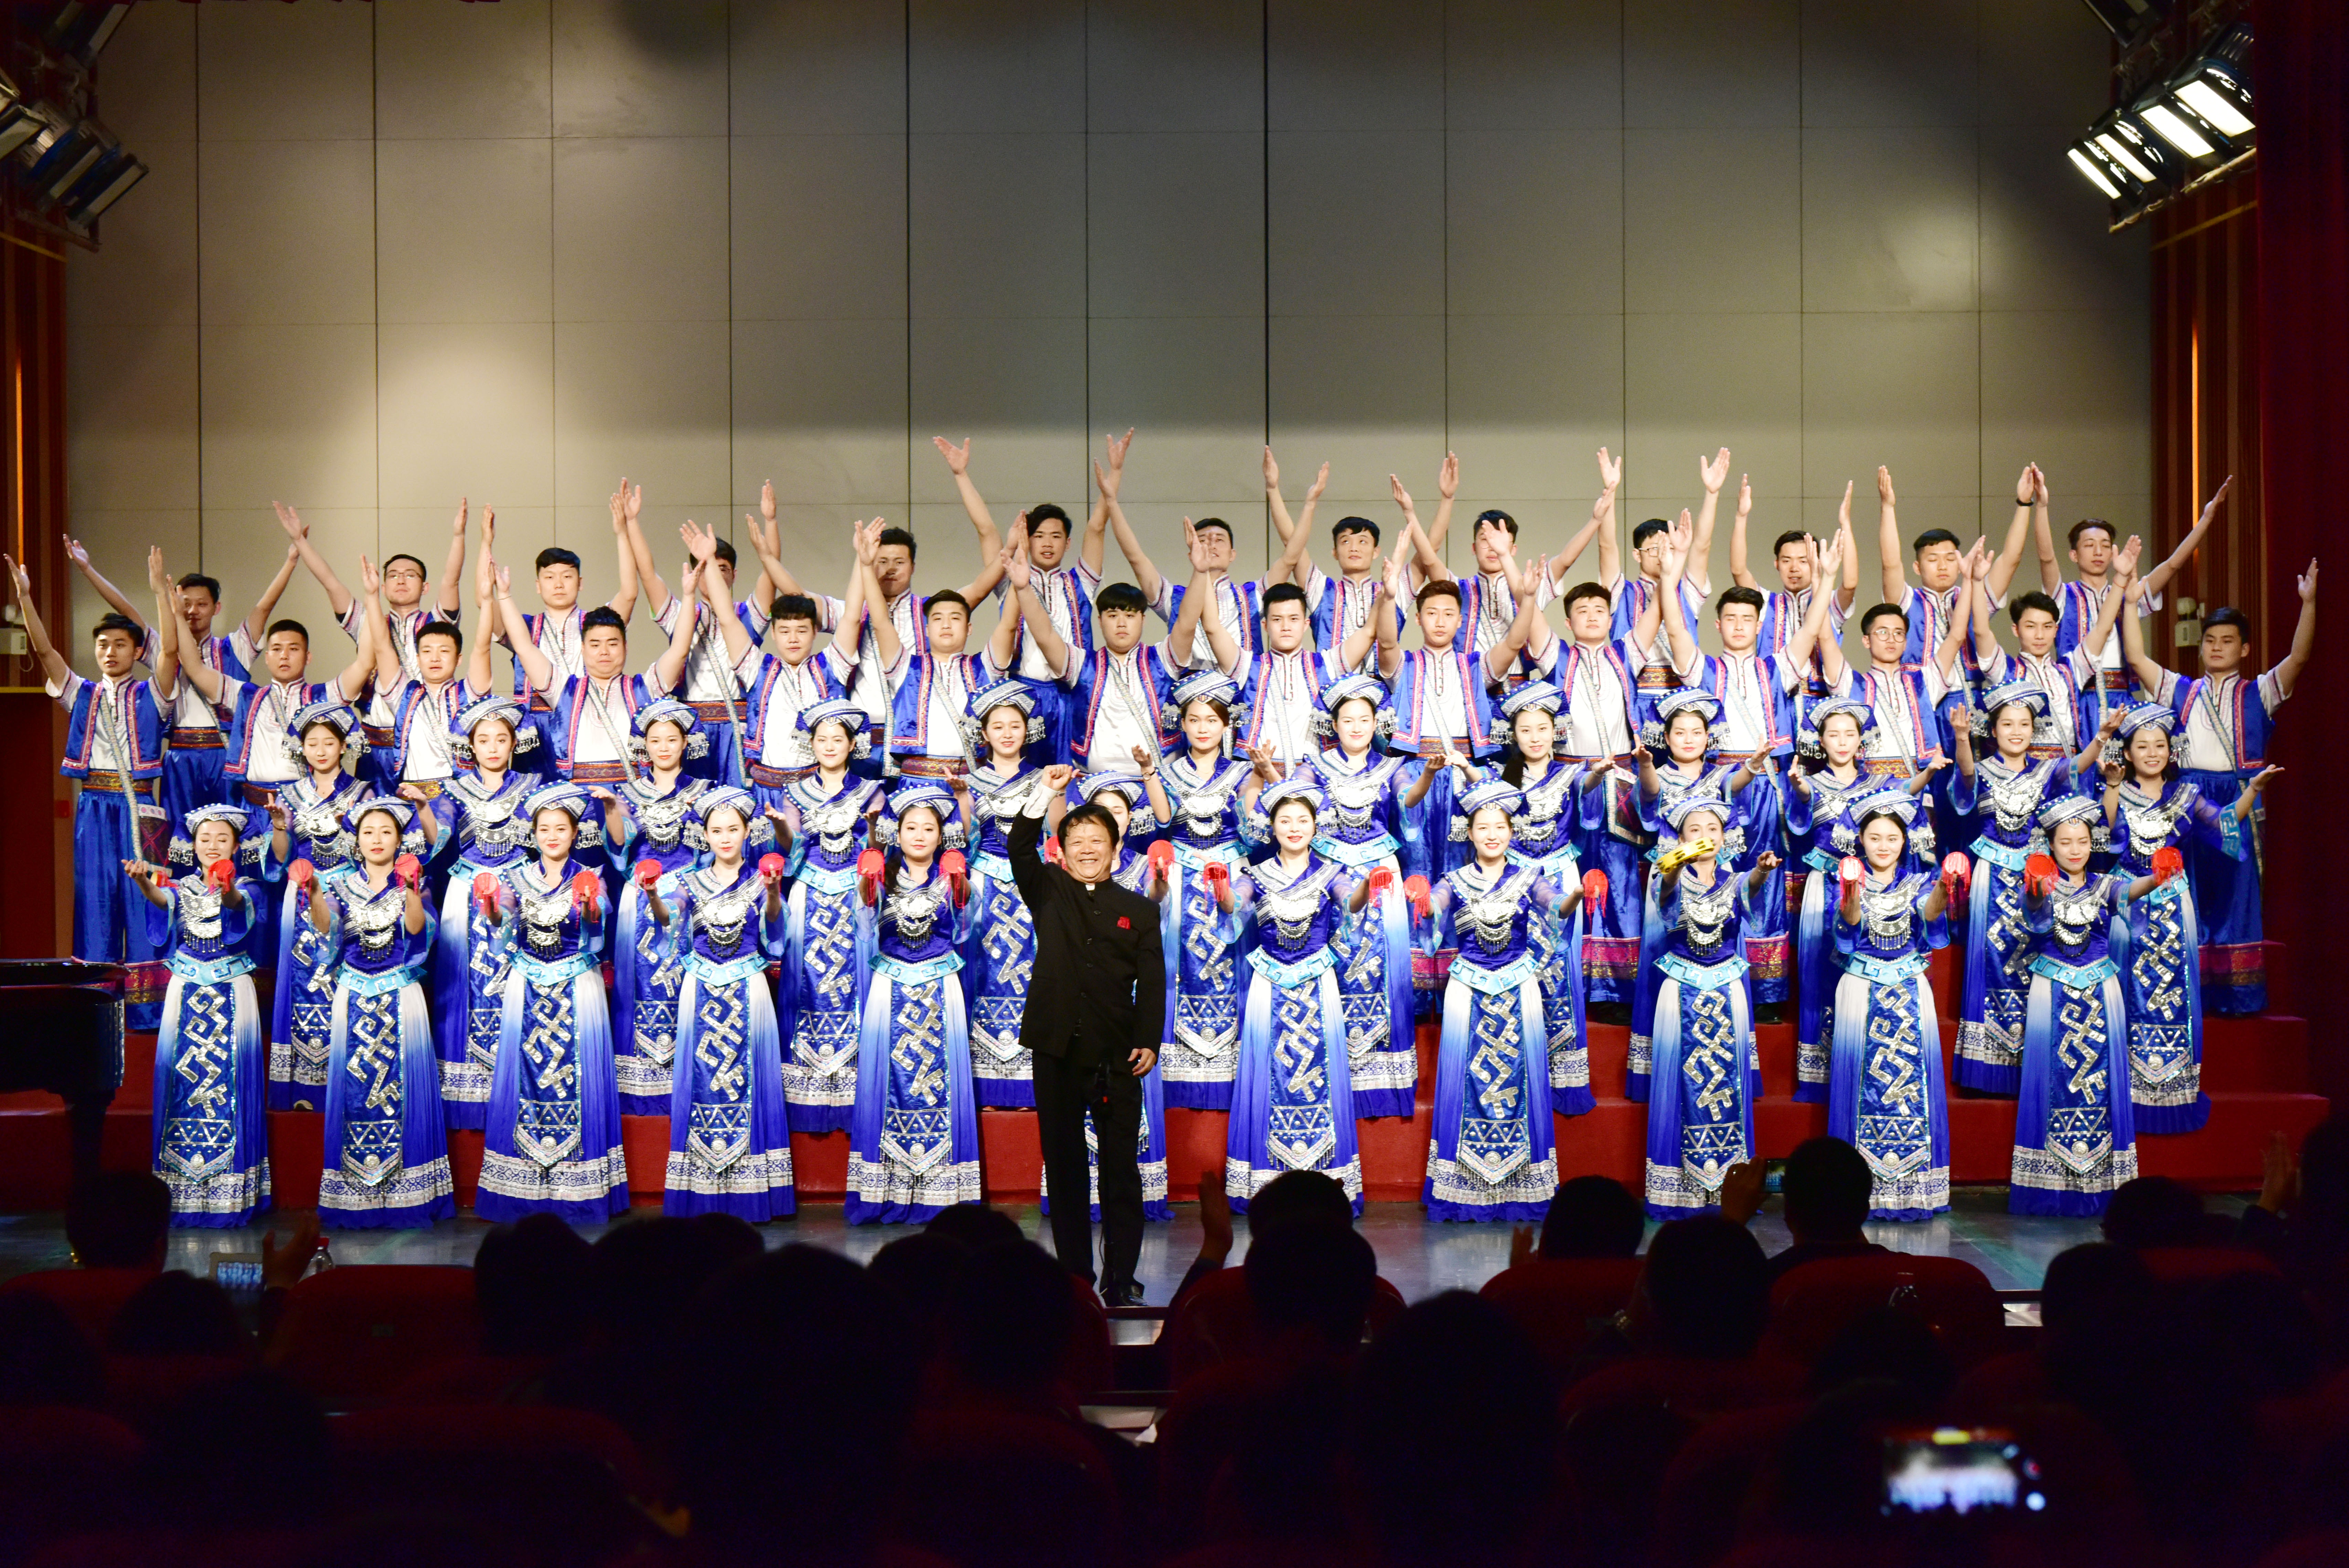 广西艺术学院合唱团到我校举办专场音乐会